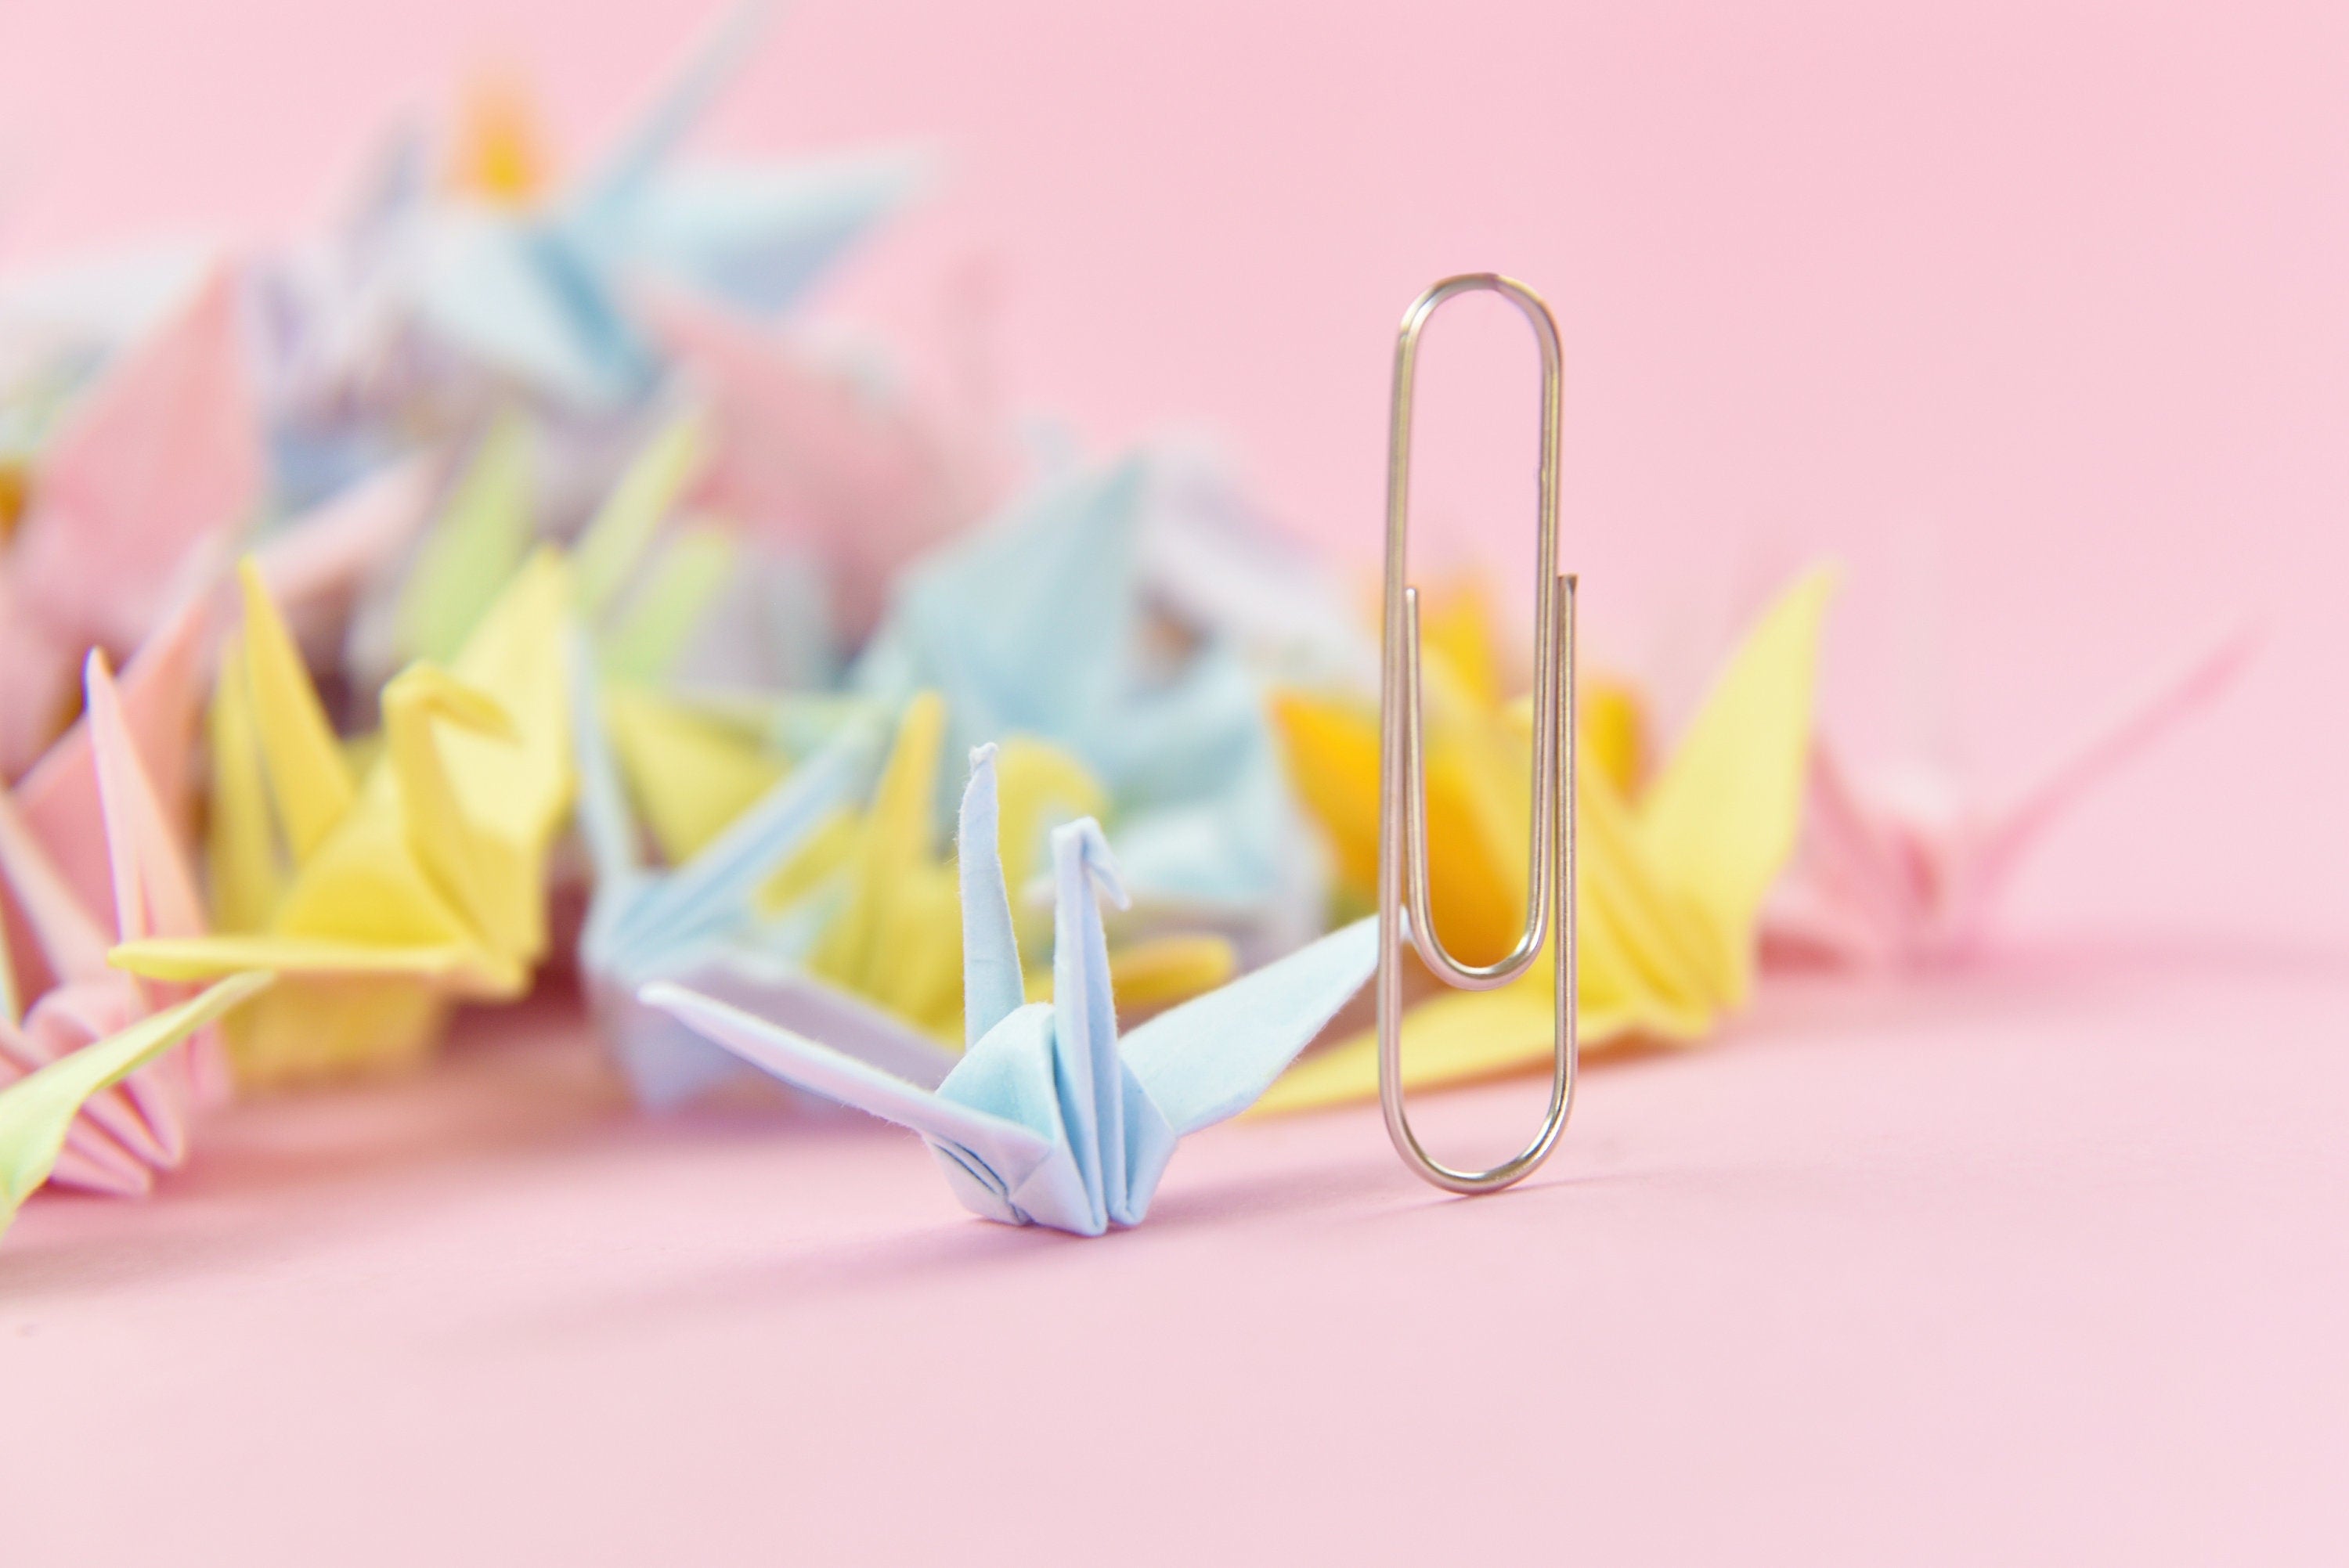 100 Grullas de papel de origami de colores mixtos - 3,81 cm (1,5 pulgadas) - Origami japonés - Regalo de boda, decoración, telón de fondo de boda